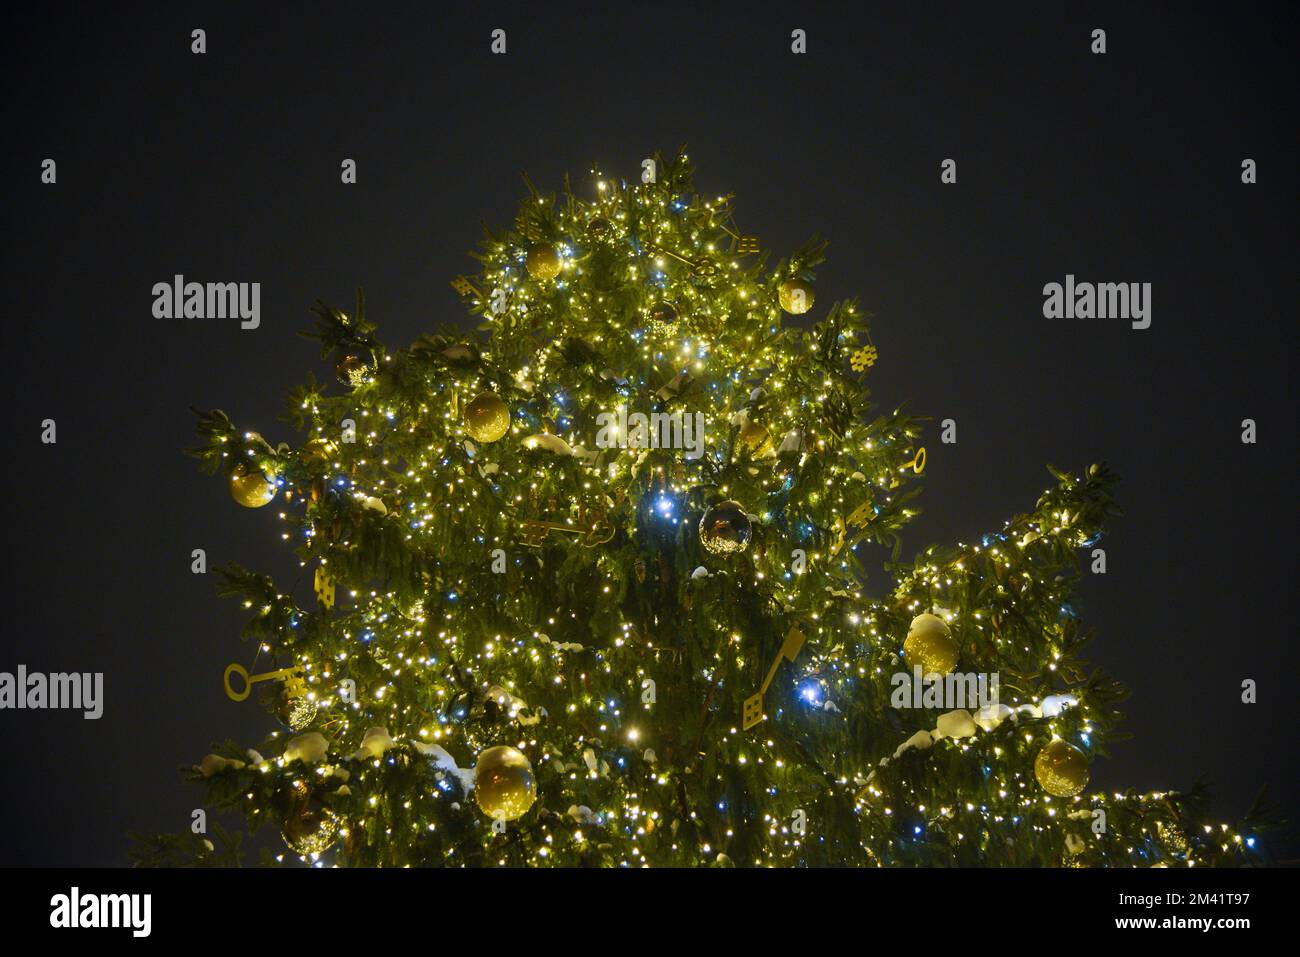 Weihnachtsbaum mit grünen schneebedeckten Zweigen, in denen Lichter und festliche Dekorationen angebracht sind. Stockfoto